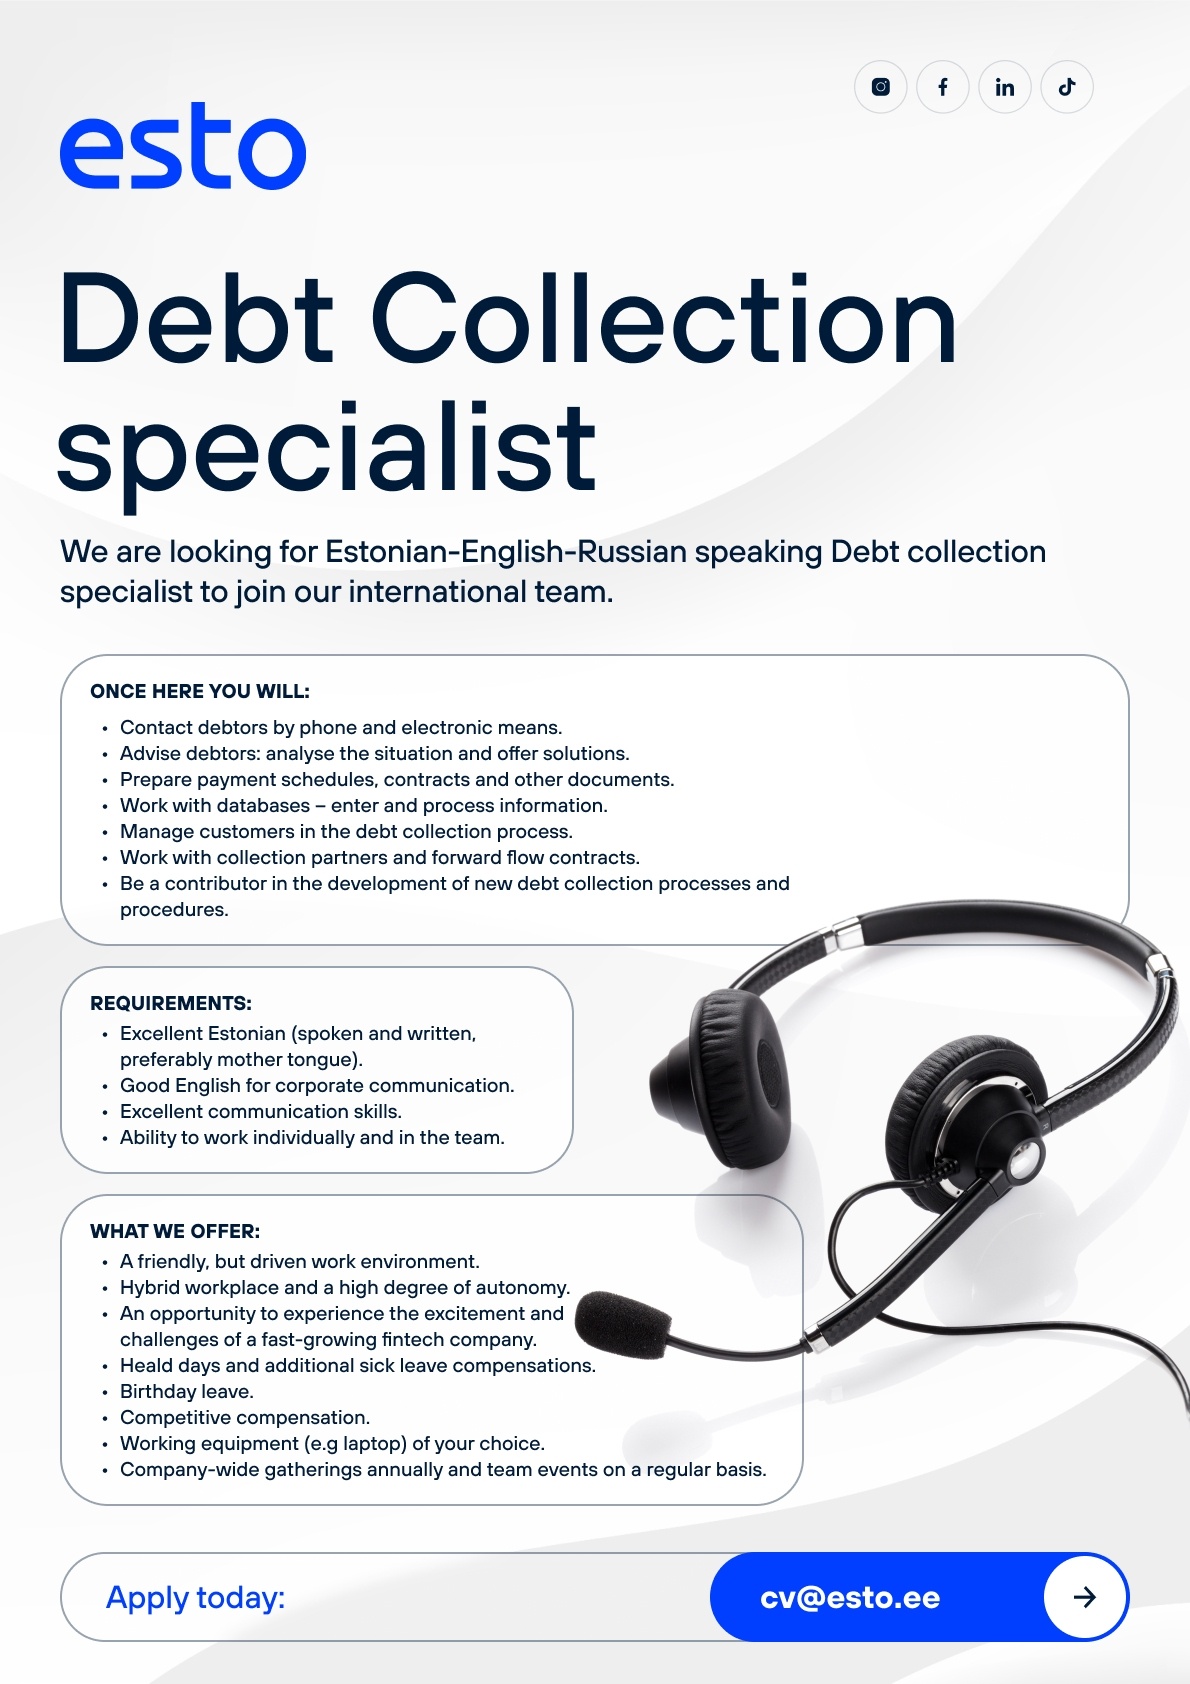 ESTO AS Debt Collection Specialist